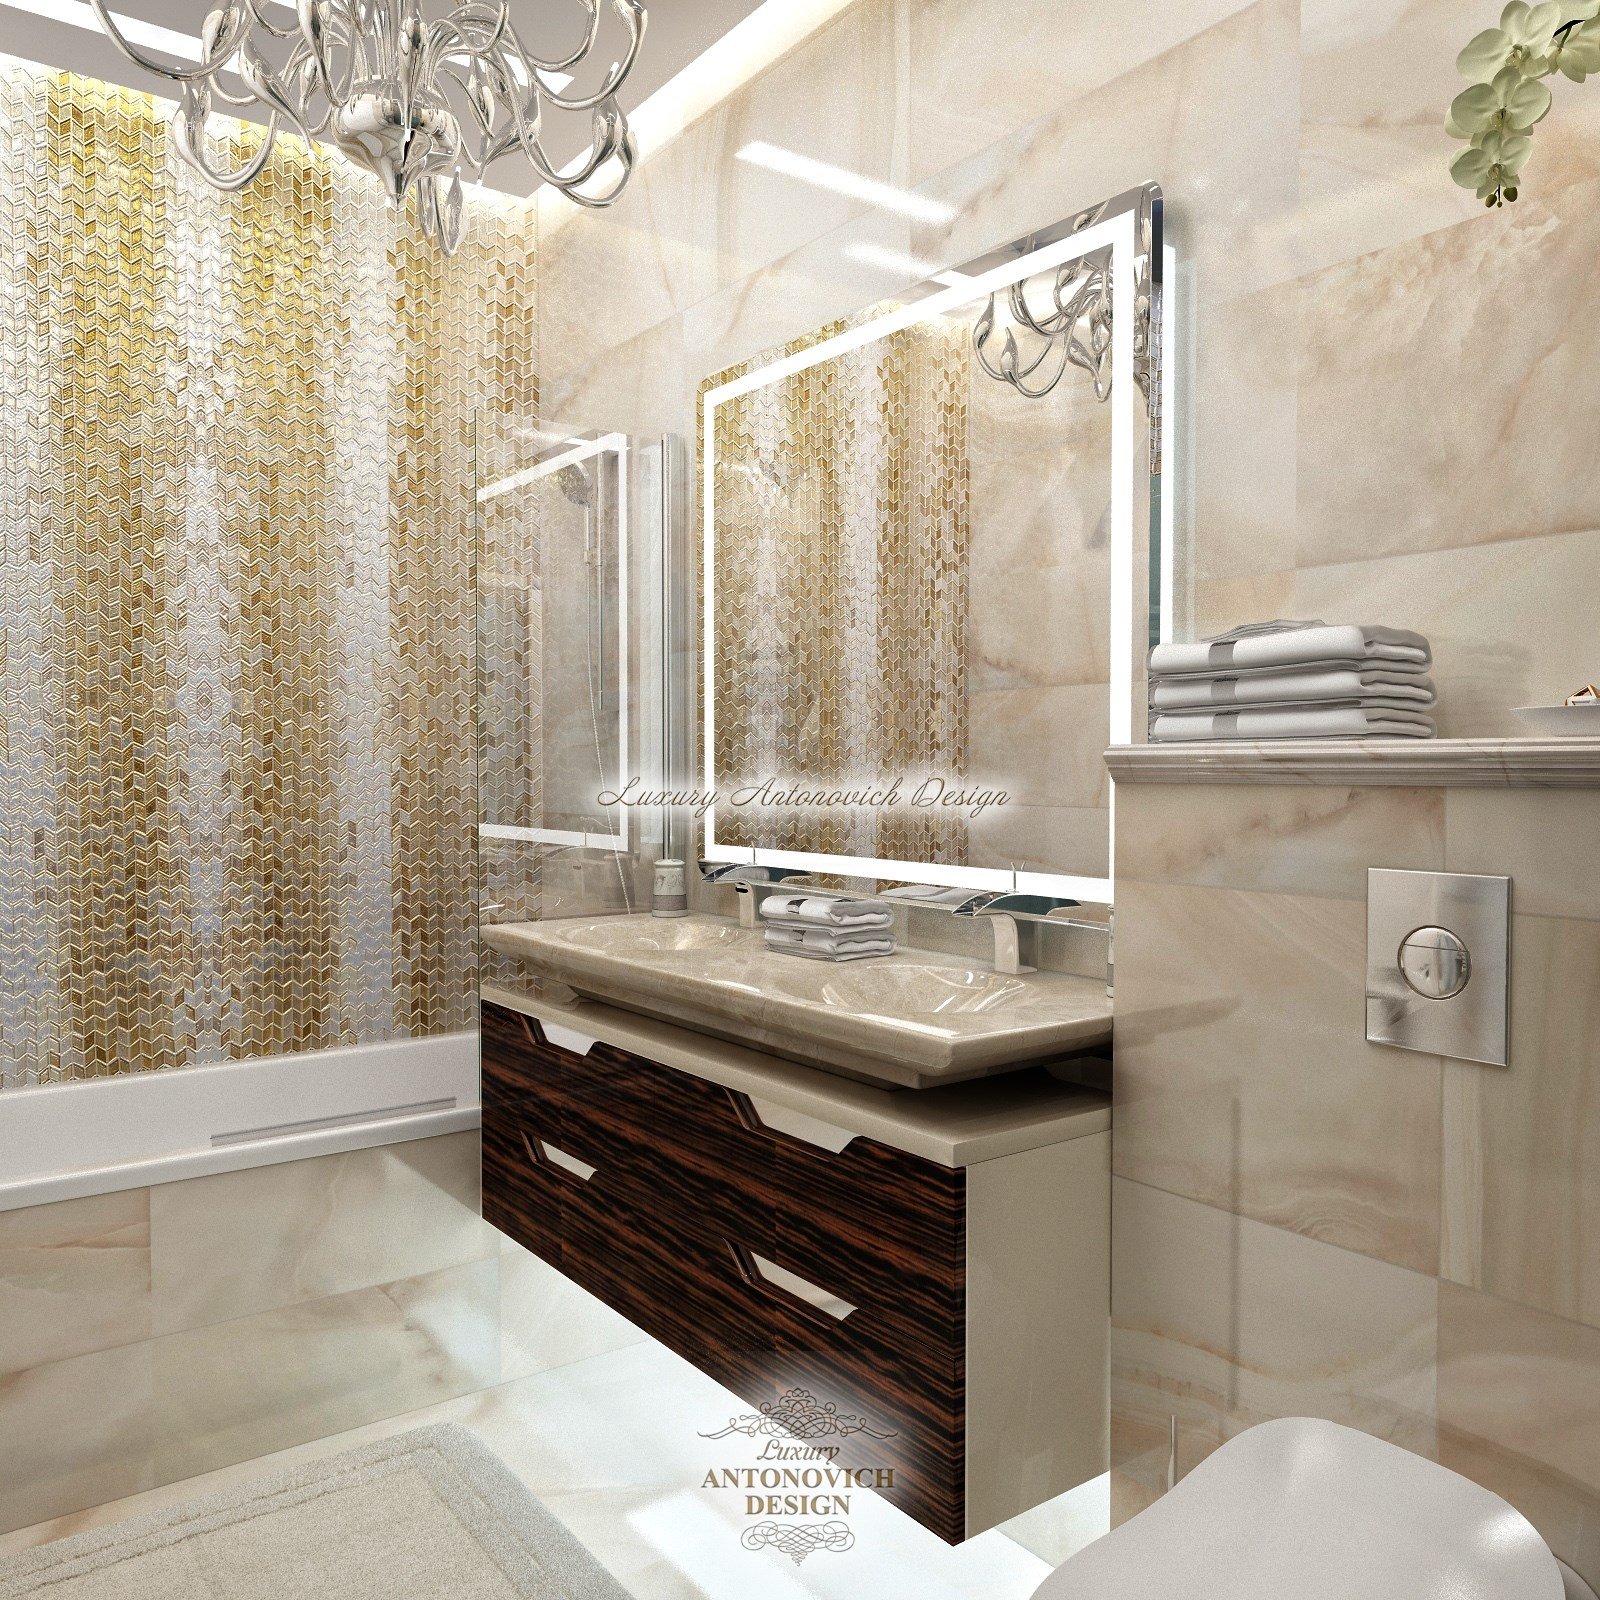 Интересные Яркие Идеи дизайна ванных комнат для дестких